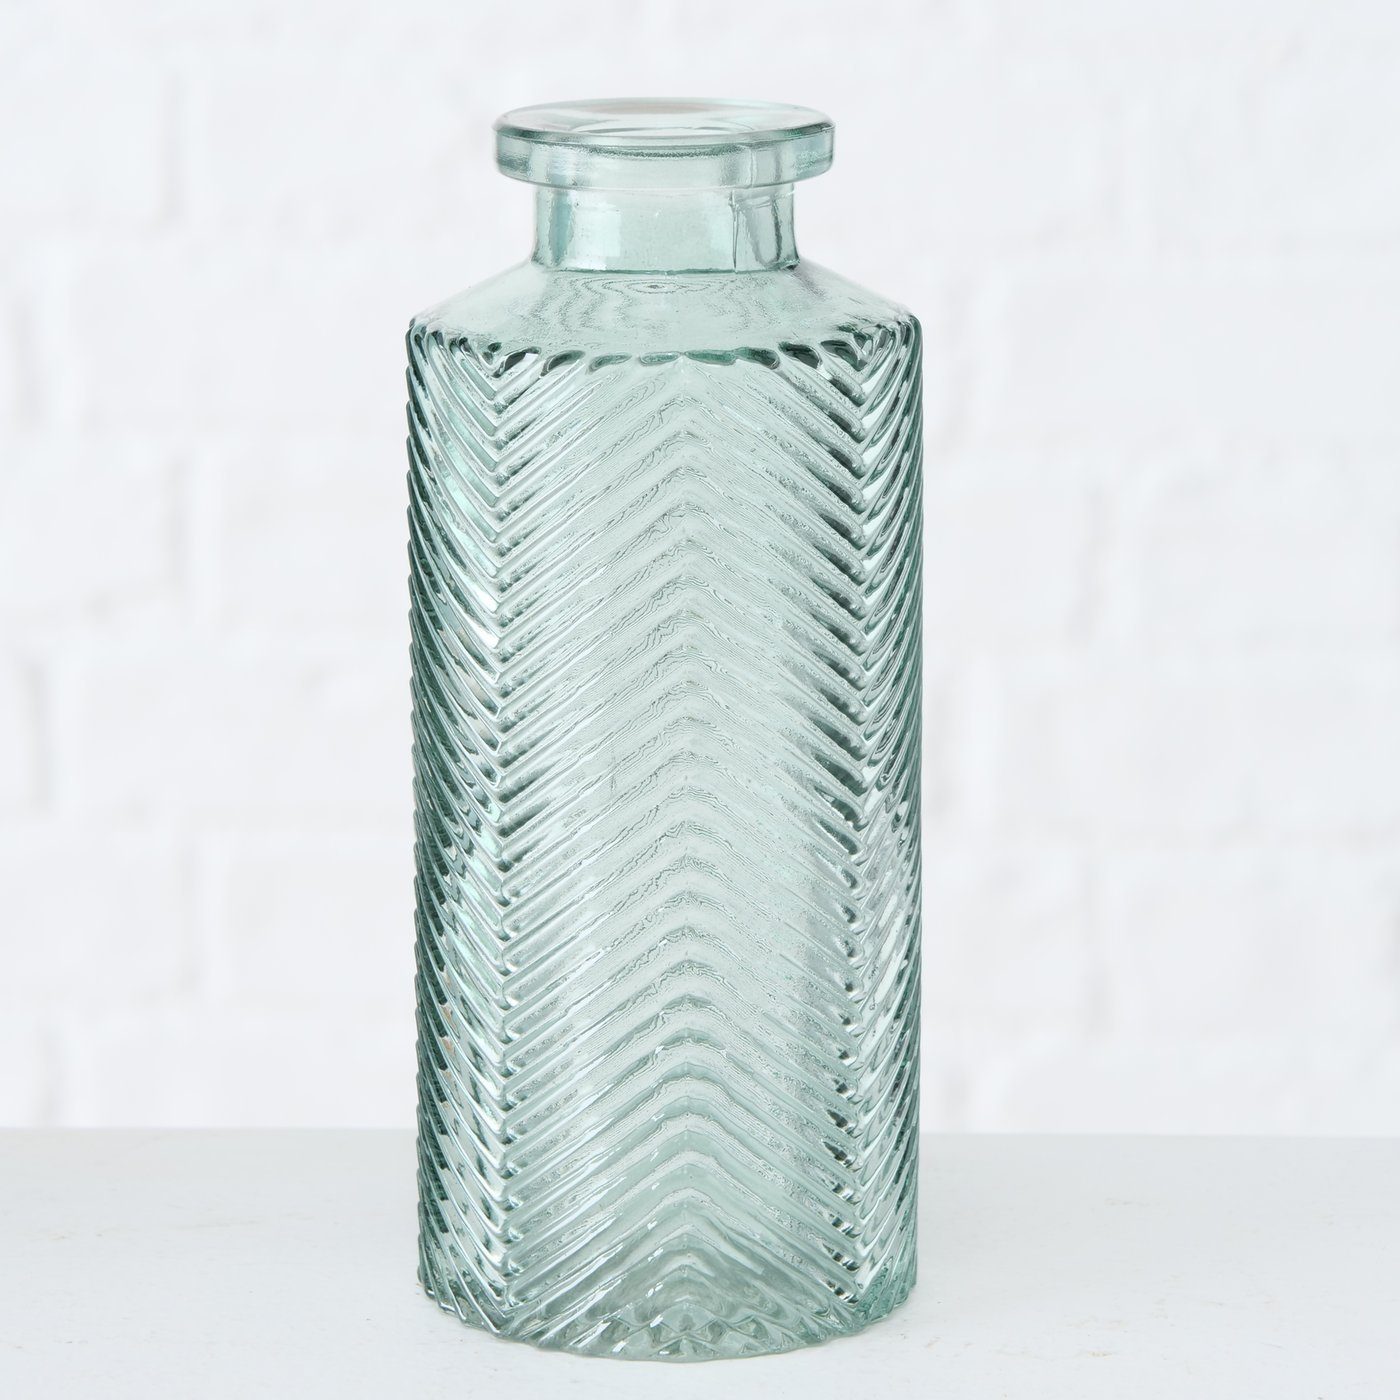 ReWu Blumenvase in Salbeigrün aus 4er Flaschenform - Dekovase im Glas Set